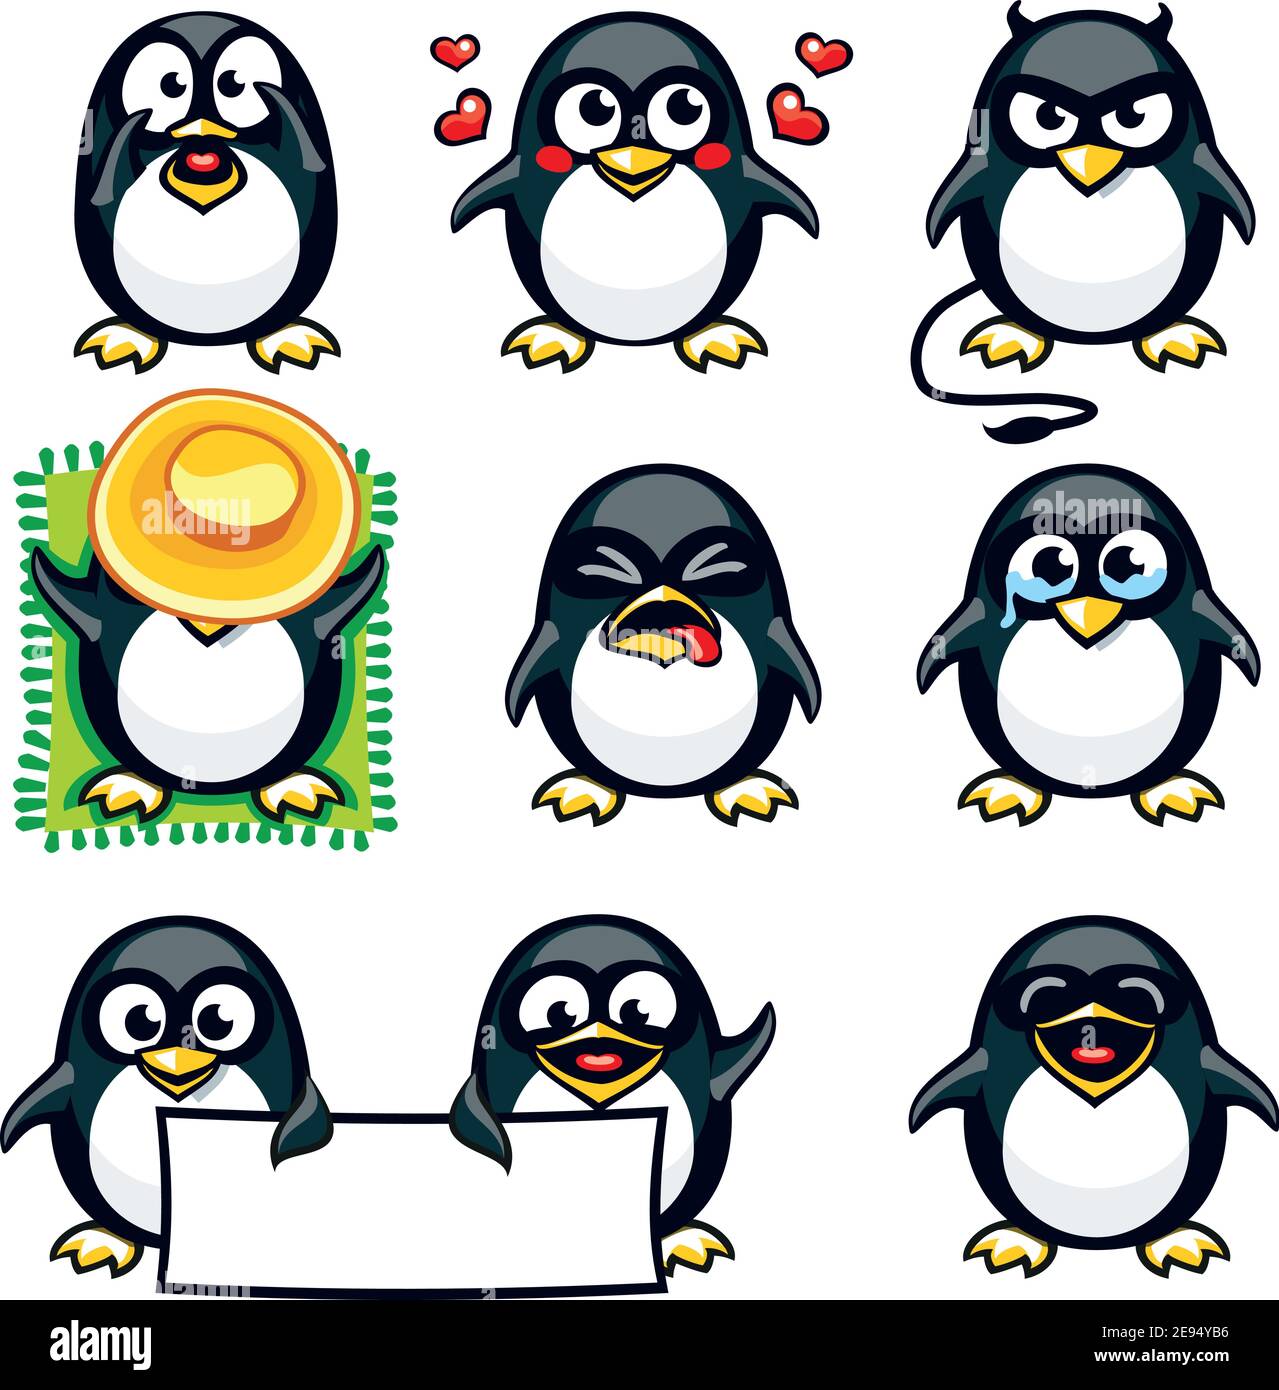 Pinguini smiley raggruppati singolarmente per copiare e incollare facilmente. Illustrazione Vettoriale